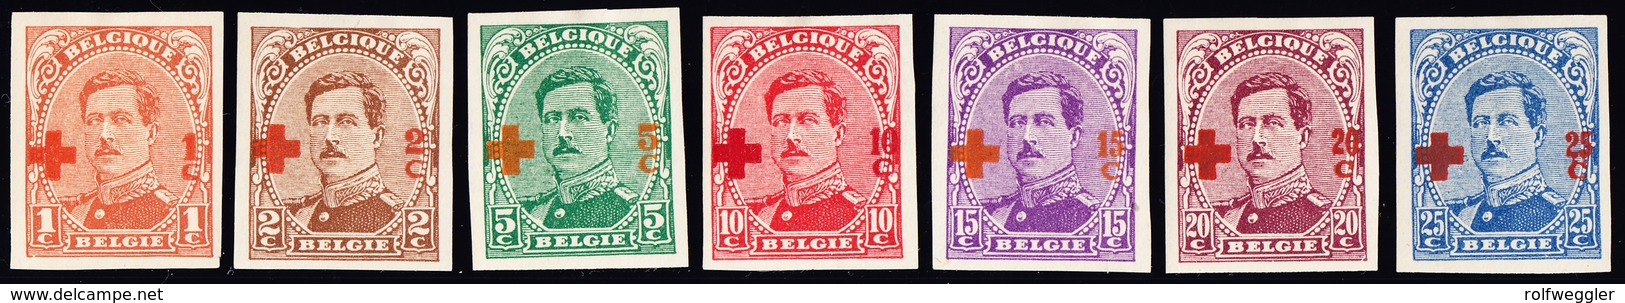 1918 Rotkreuz Überdruck Aus Serie 14 Werte Ungezähnt - 1918 Rotes Kreuz